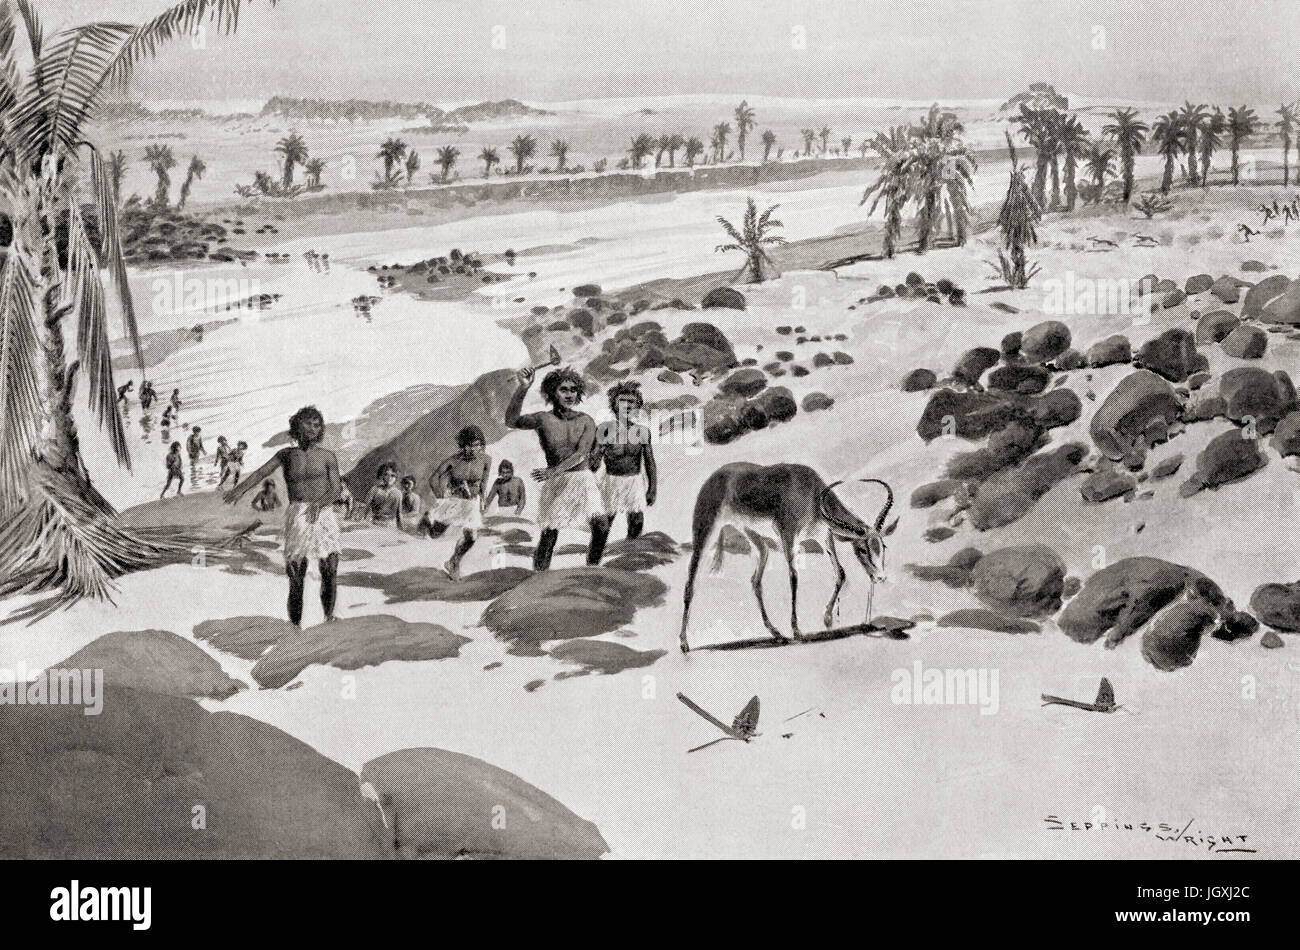 Au début de la chasse pour l'alimentation gazelle égyptiens en jetant les tomahawks à lame et rendre la capture facile. L'histoire de Hutchinson de l'ONU, publié en 1915. Banque D'Images